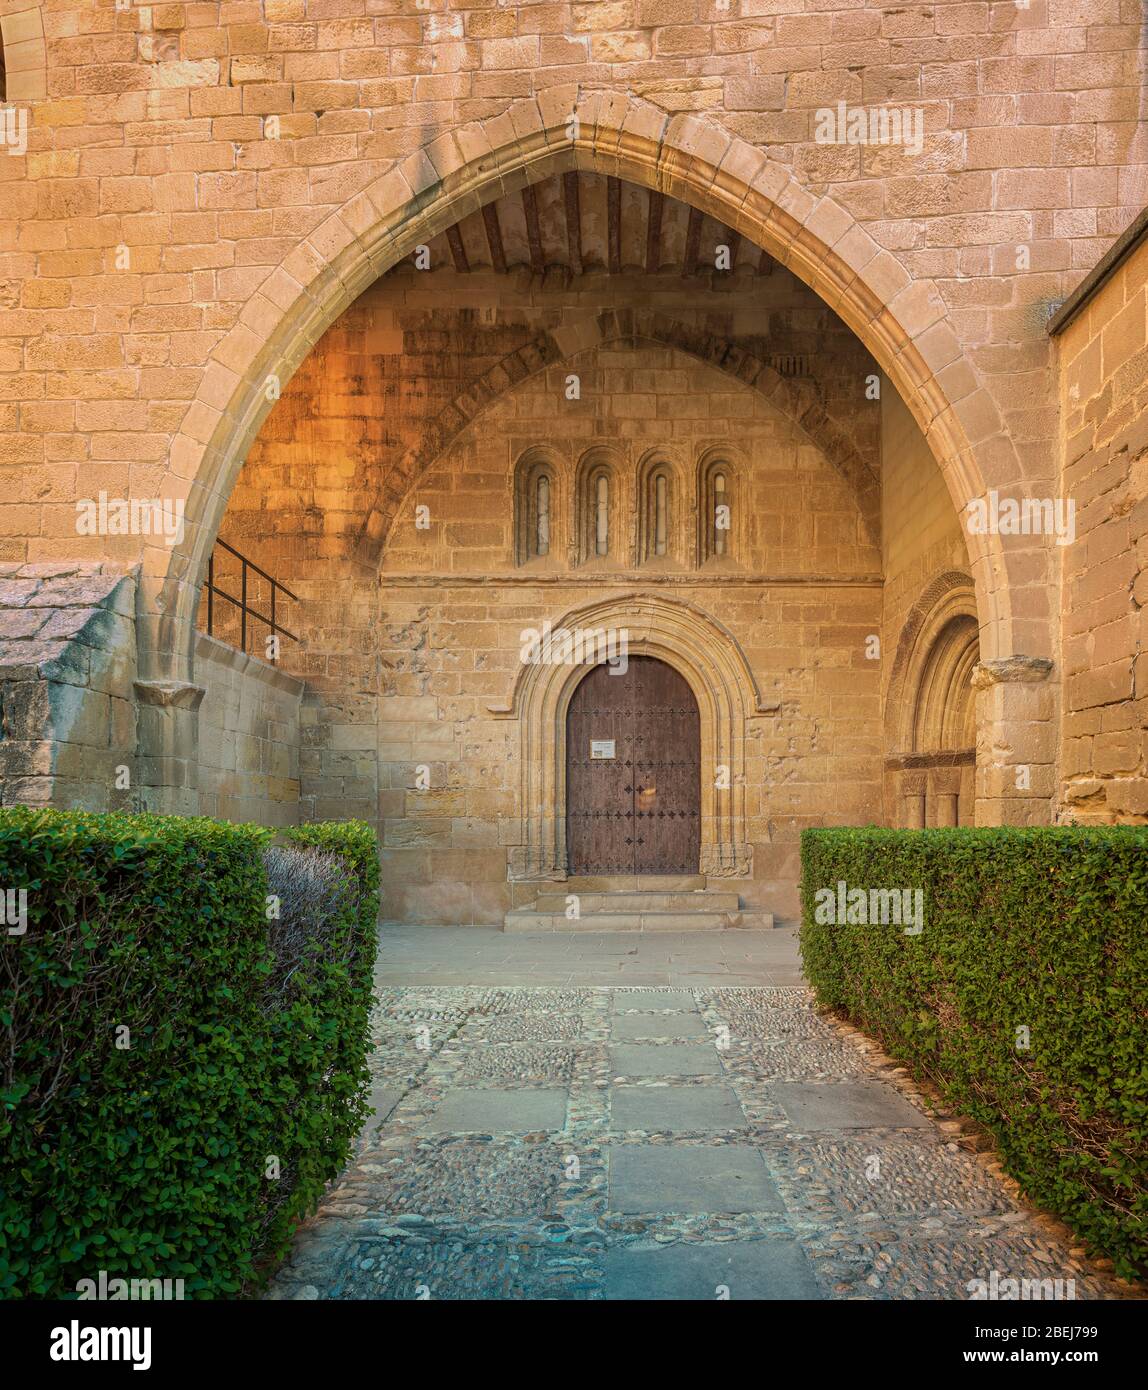 Vista generale degli archi e del portico romanico della Torre del Homenaje, fortezza di Calatrava. Alcañiz, provincia di Teruel, Aragona, Spagna Foto Stock